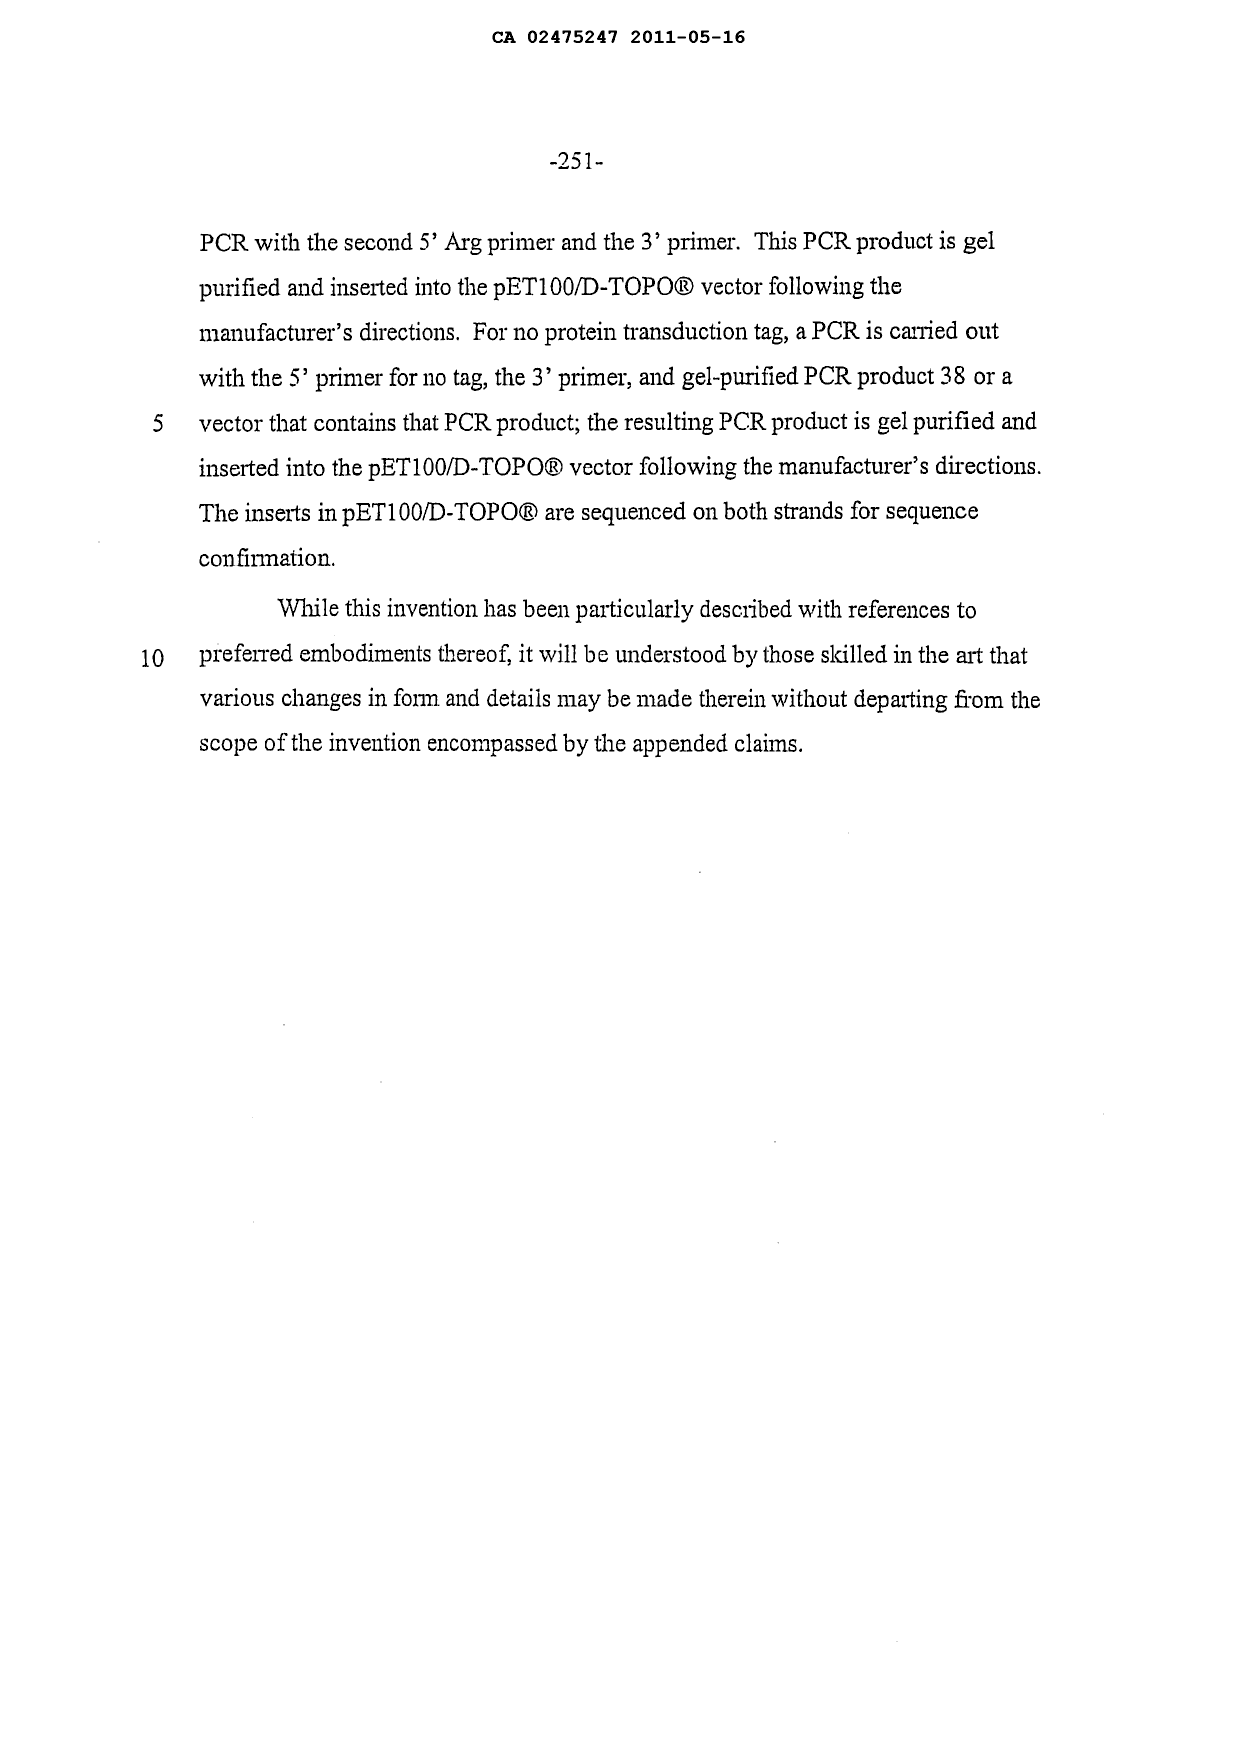 Canadian Patent Document 2475247. Description 20101216. Image 54 of 55